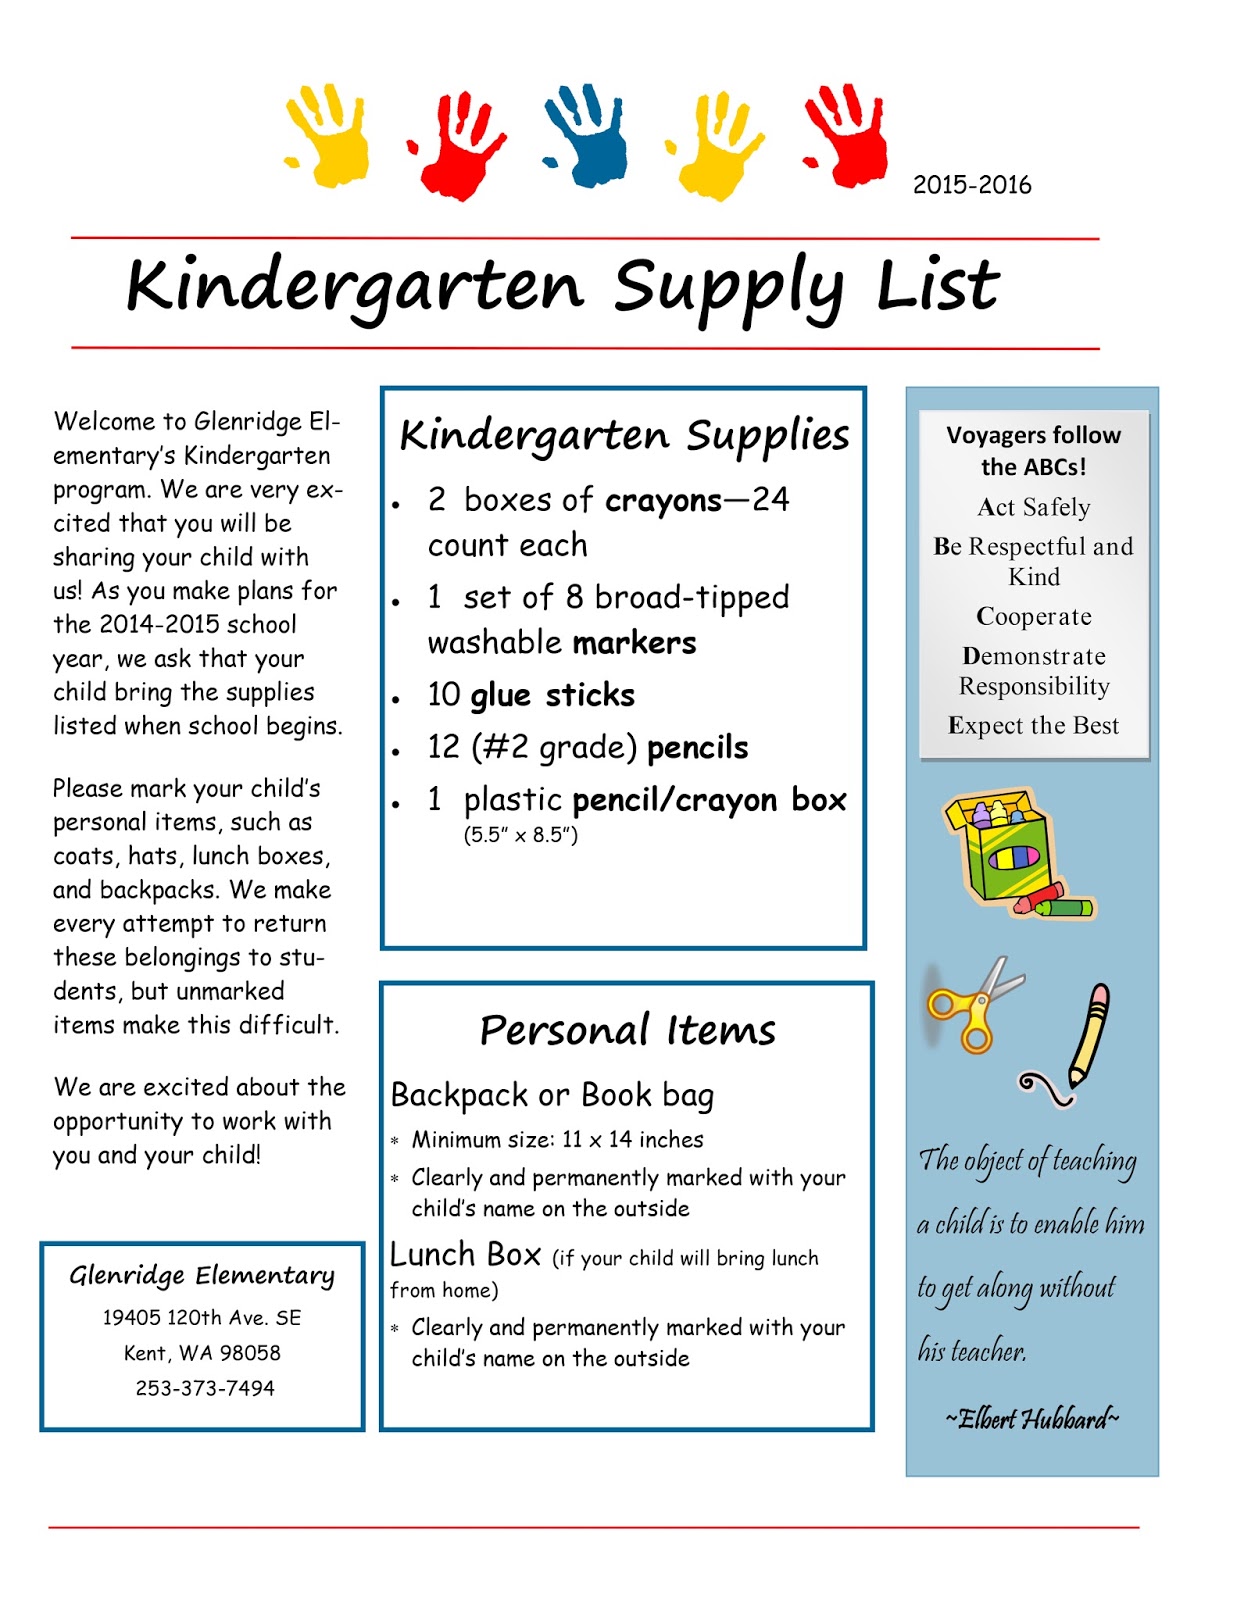 Kindergarten+Supply+List+15 16 - School Supply For Kindergarten